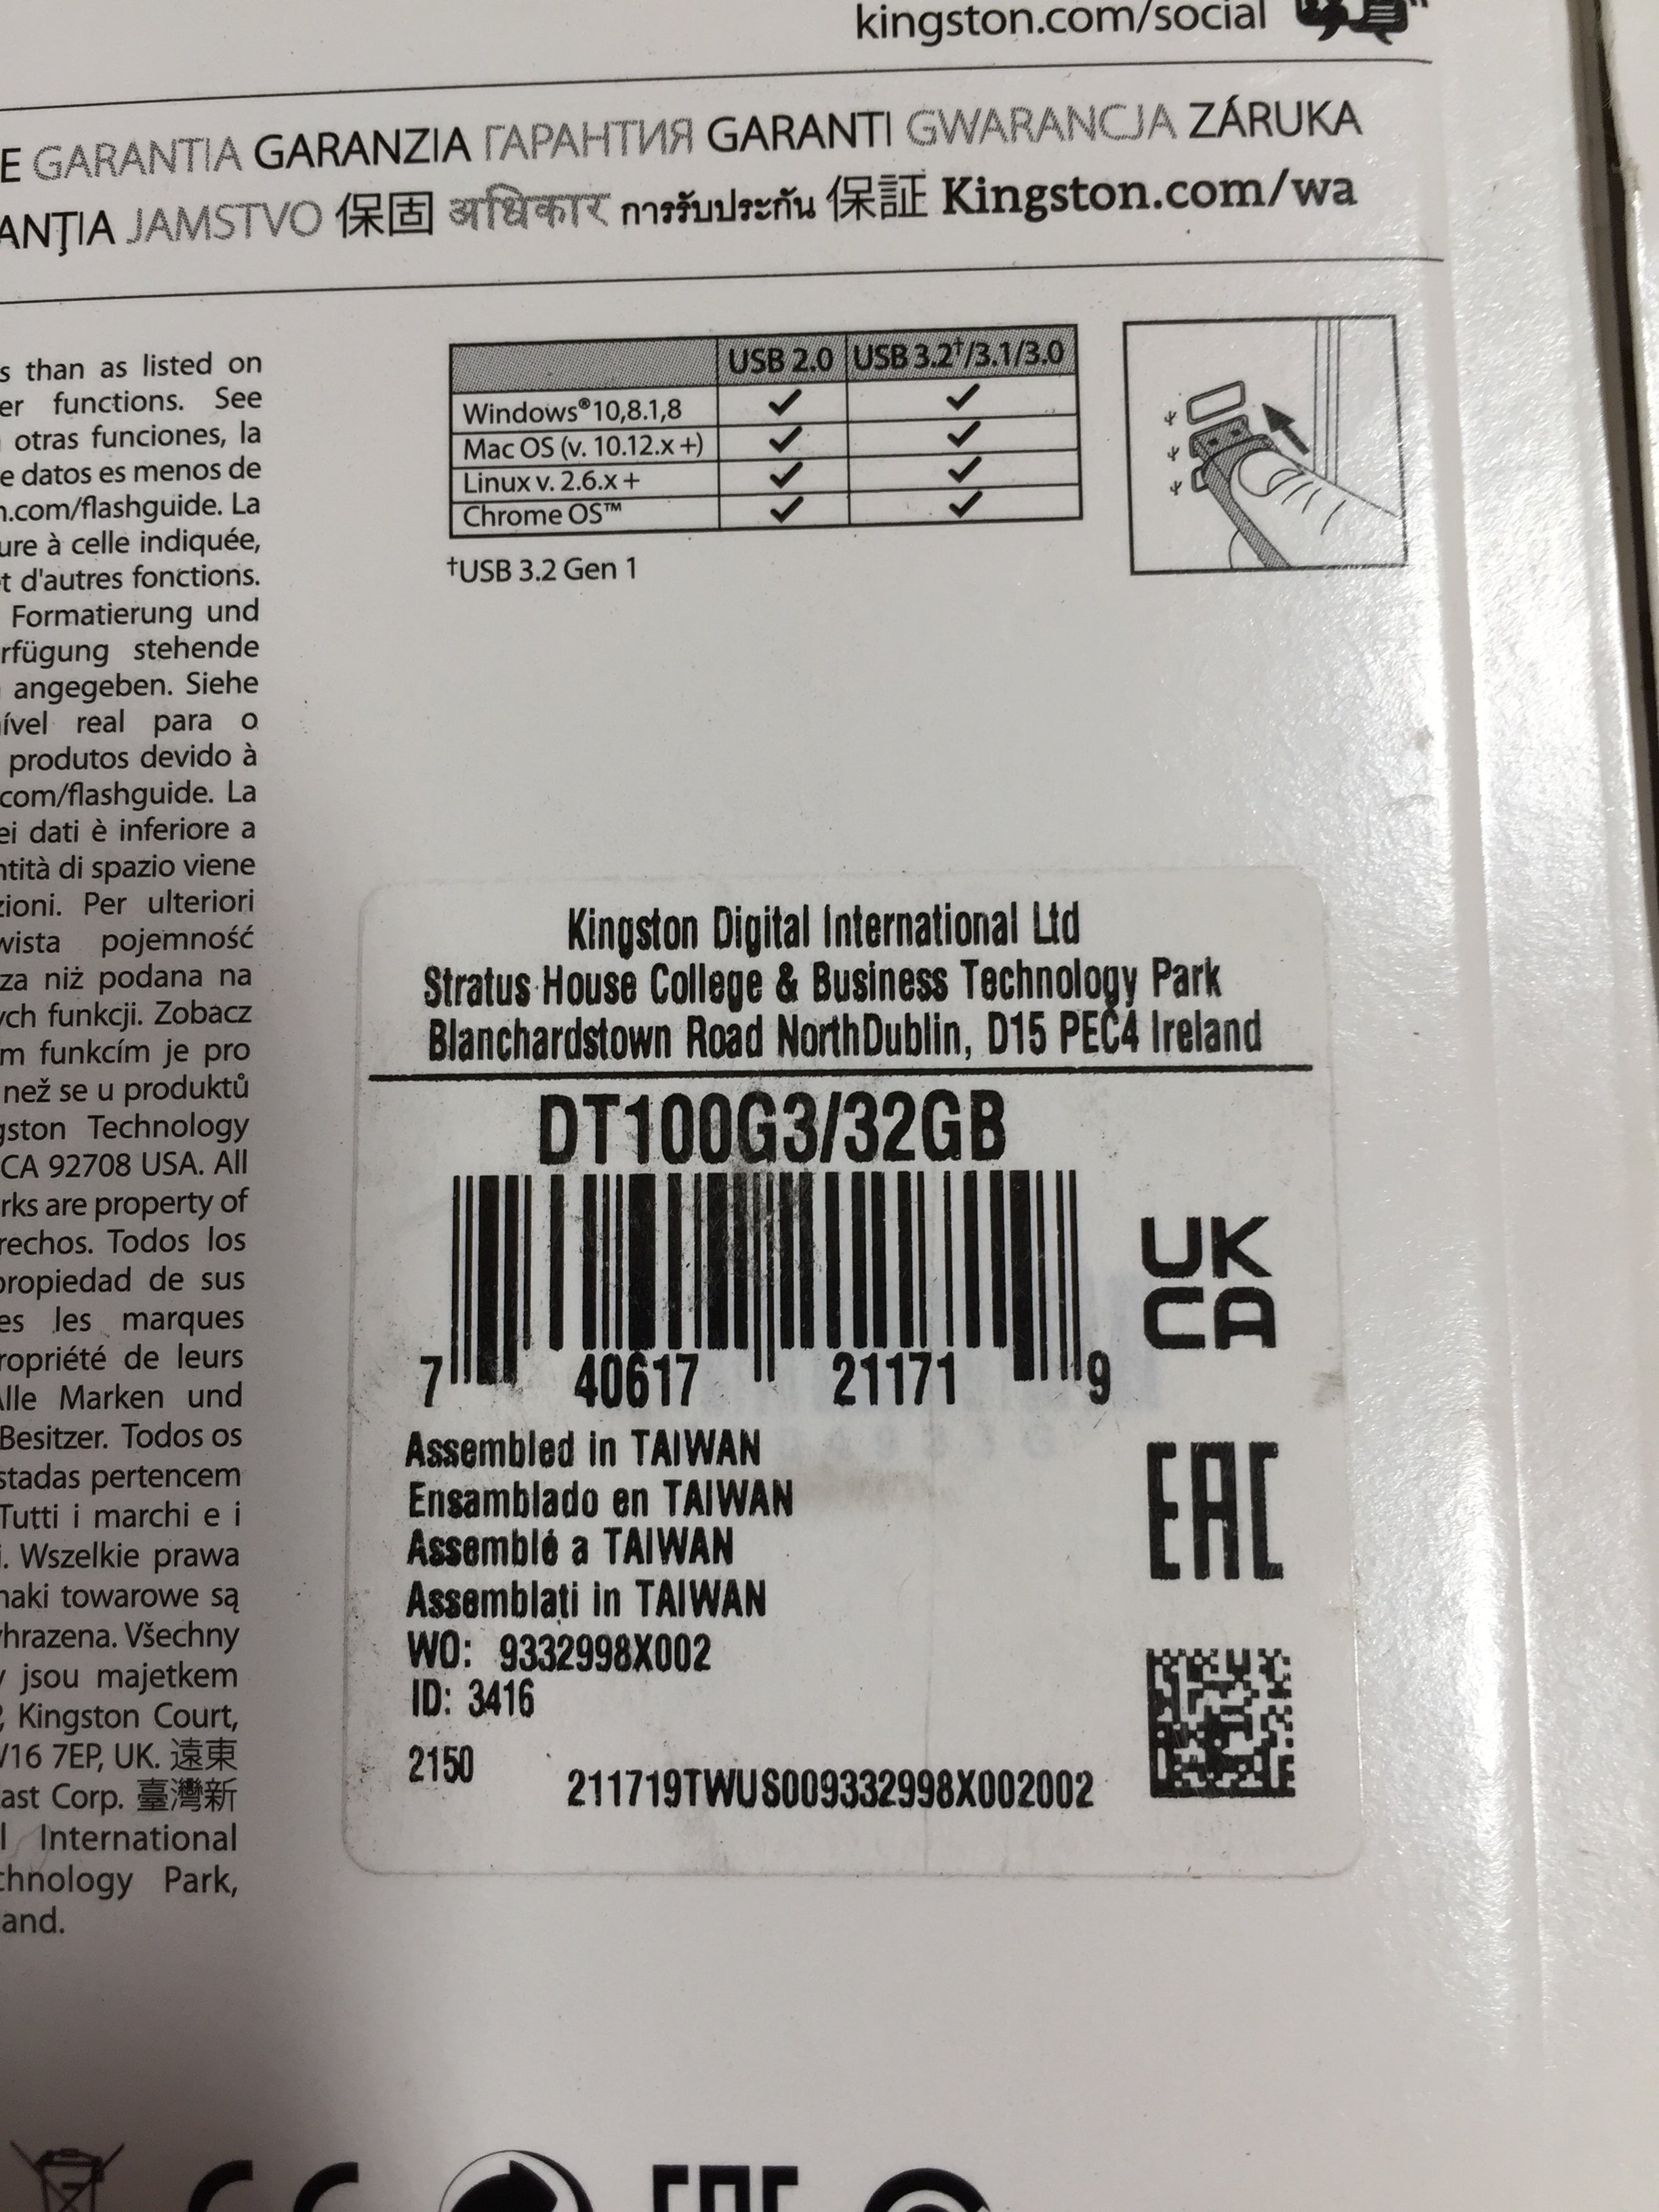 2 PACK - Kingston 32GB 100 G3 USB 3.0 DataTraveler (DT100G3/32GB) Black *SEALED* (7931518779630)